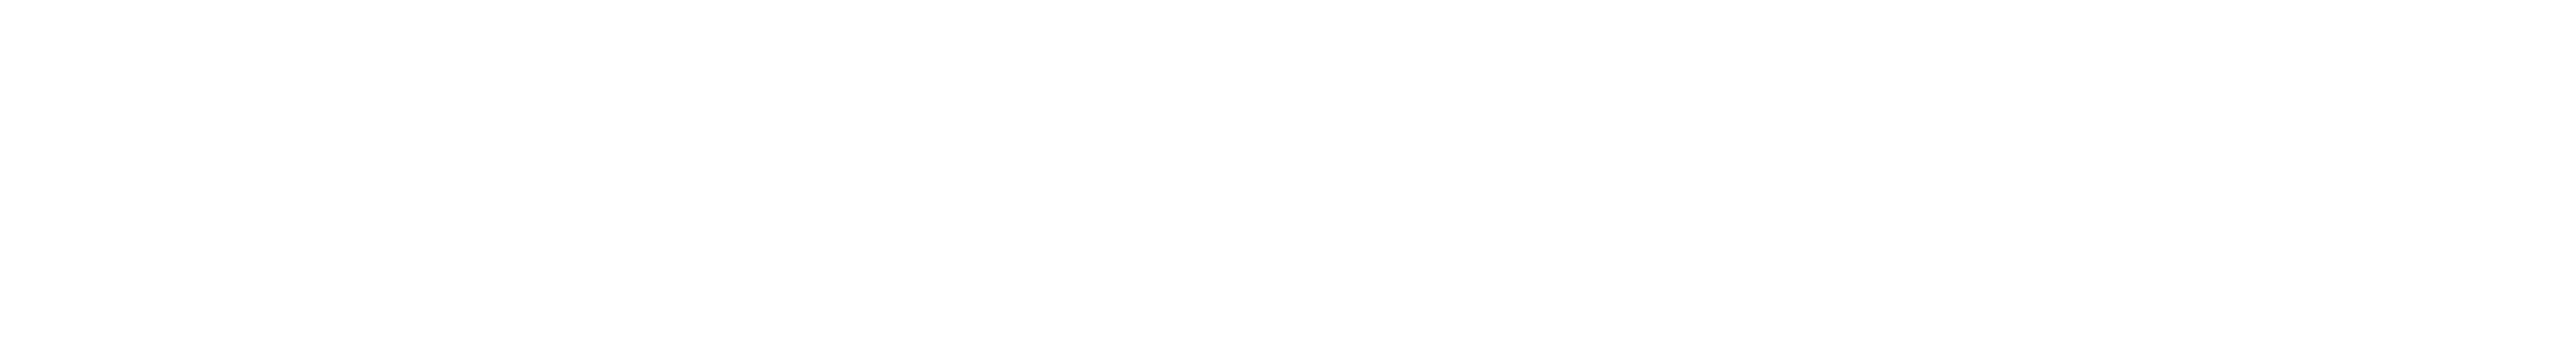 Koen Terra Design